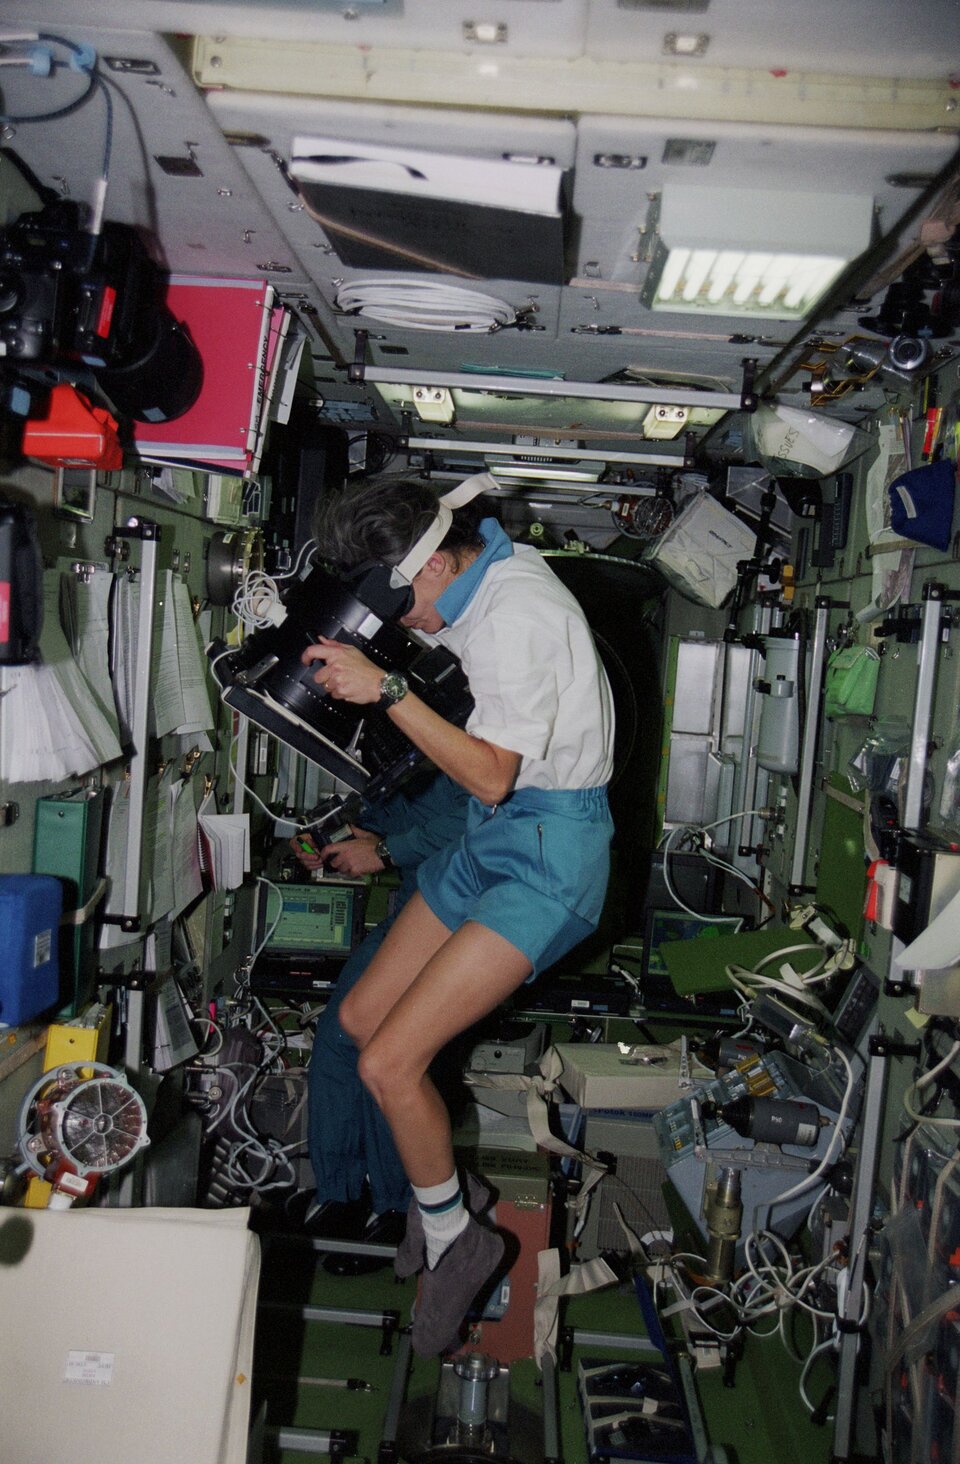 Claudie Haigneré avaruusasemalla tekemässä fysiologista koetta.